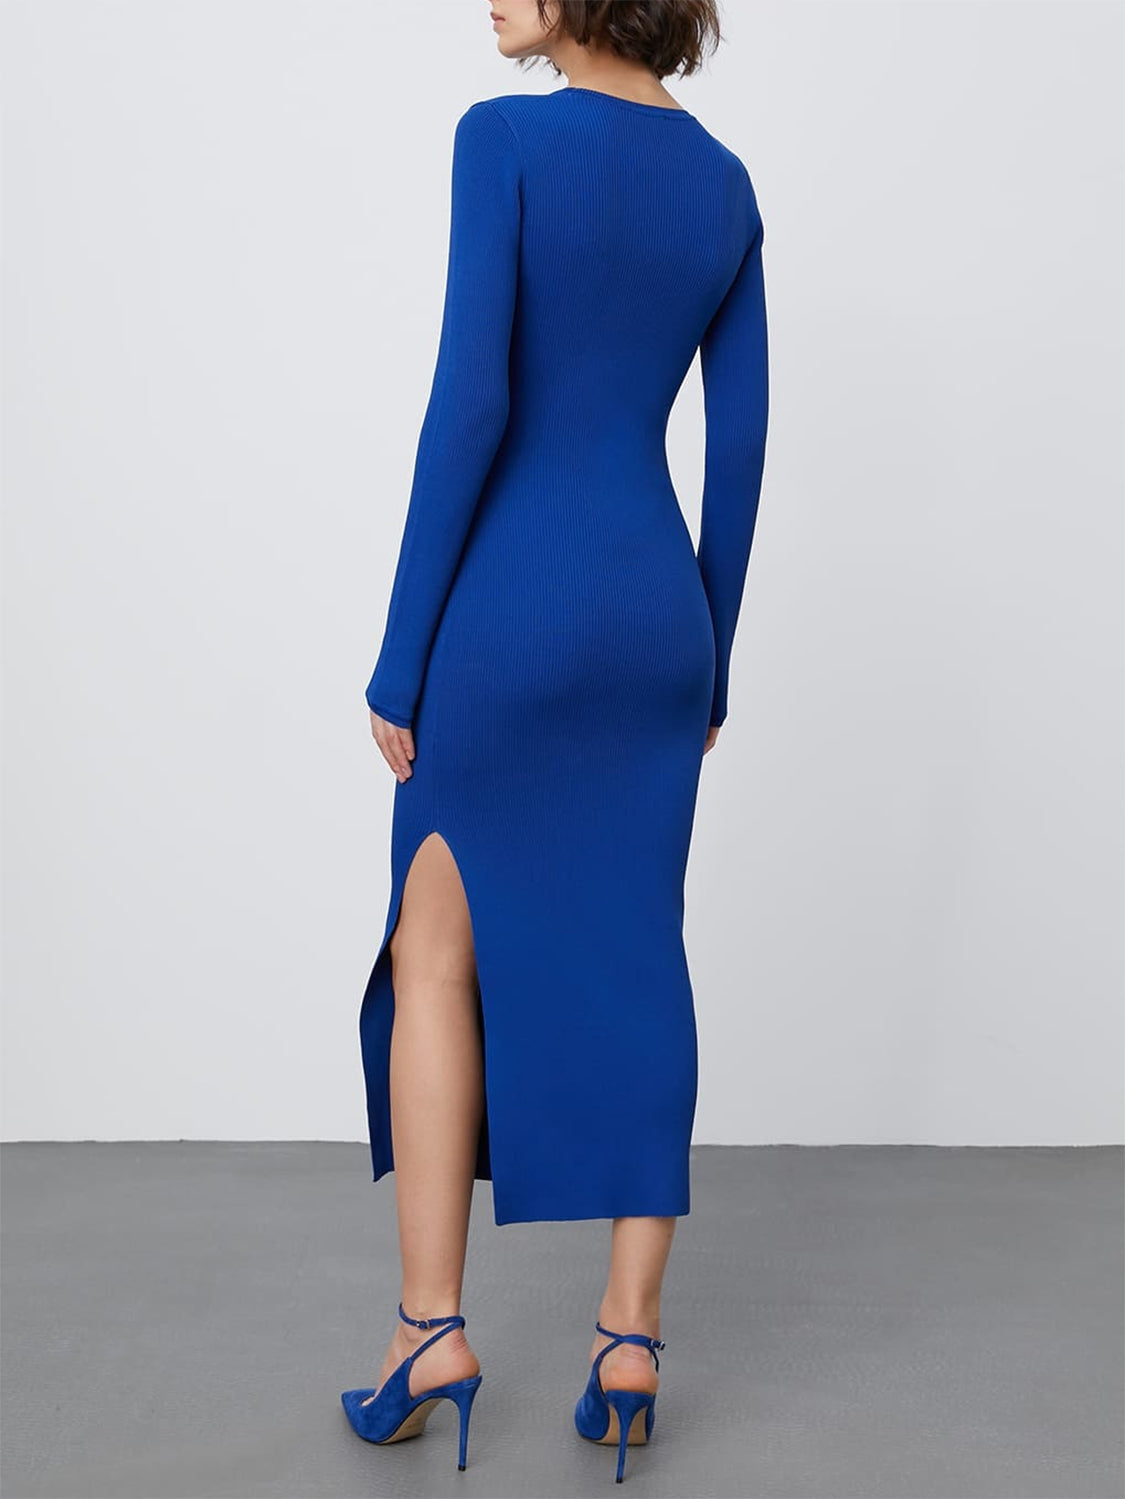 Round Neck Slit Sweater Dress - Shopiebay